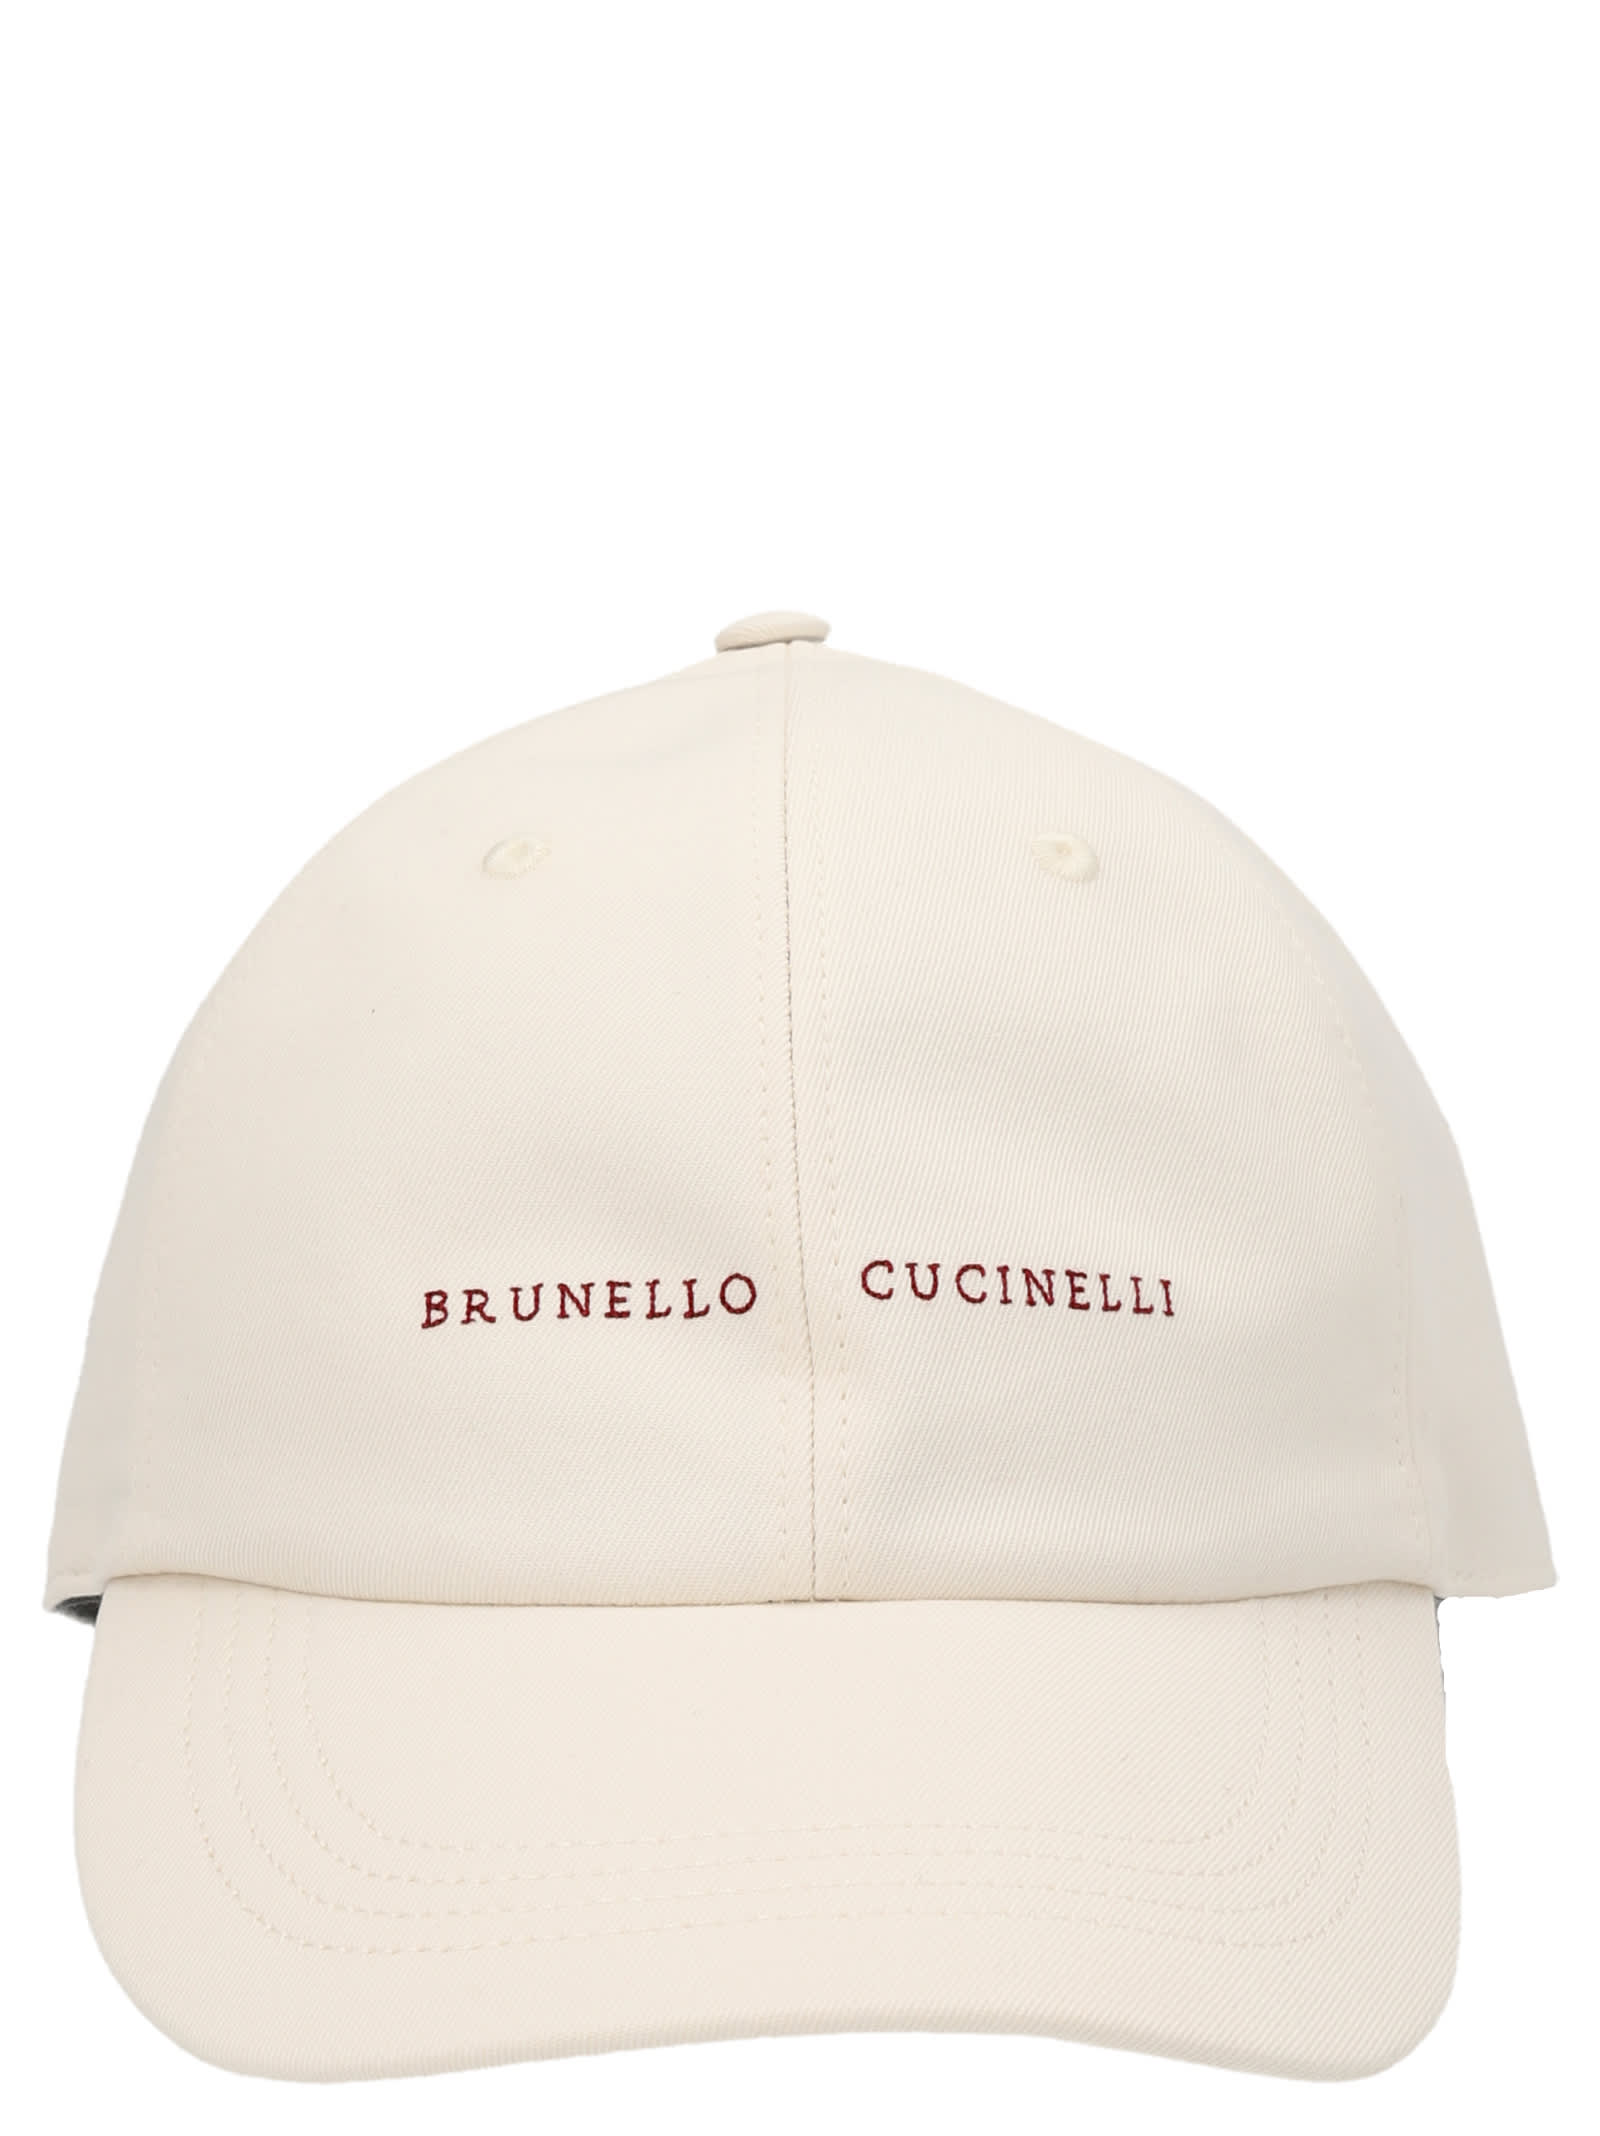 BRUNELLO CUCINELLI LOGO EMBROIDERY CAP